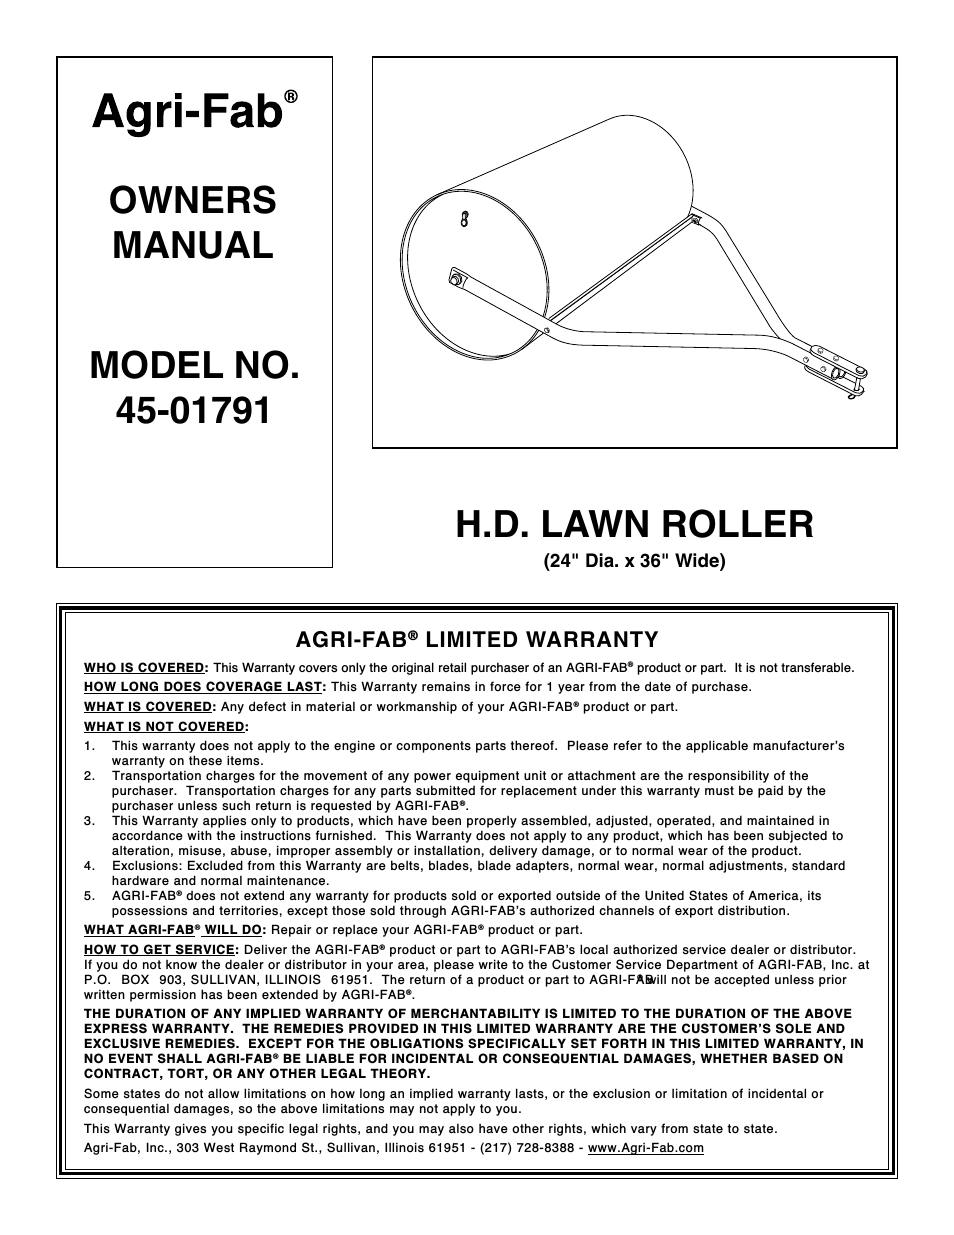 H.D. Lawn Roller 45-01791